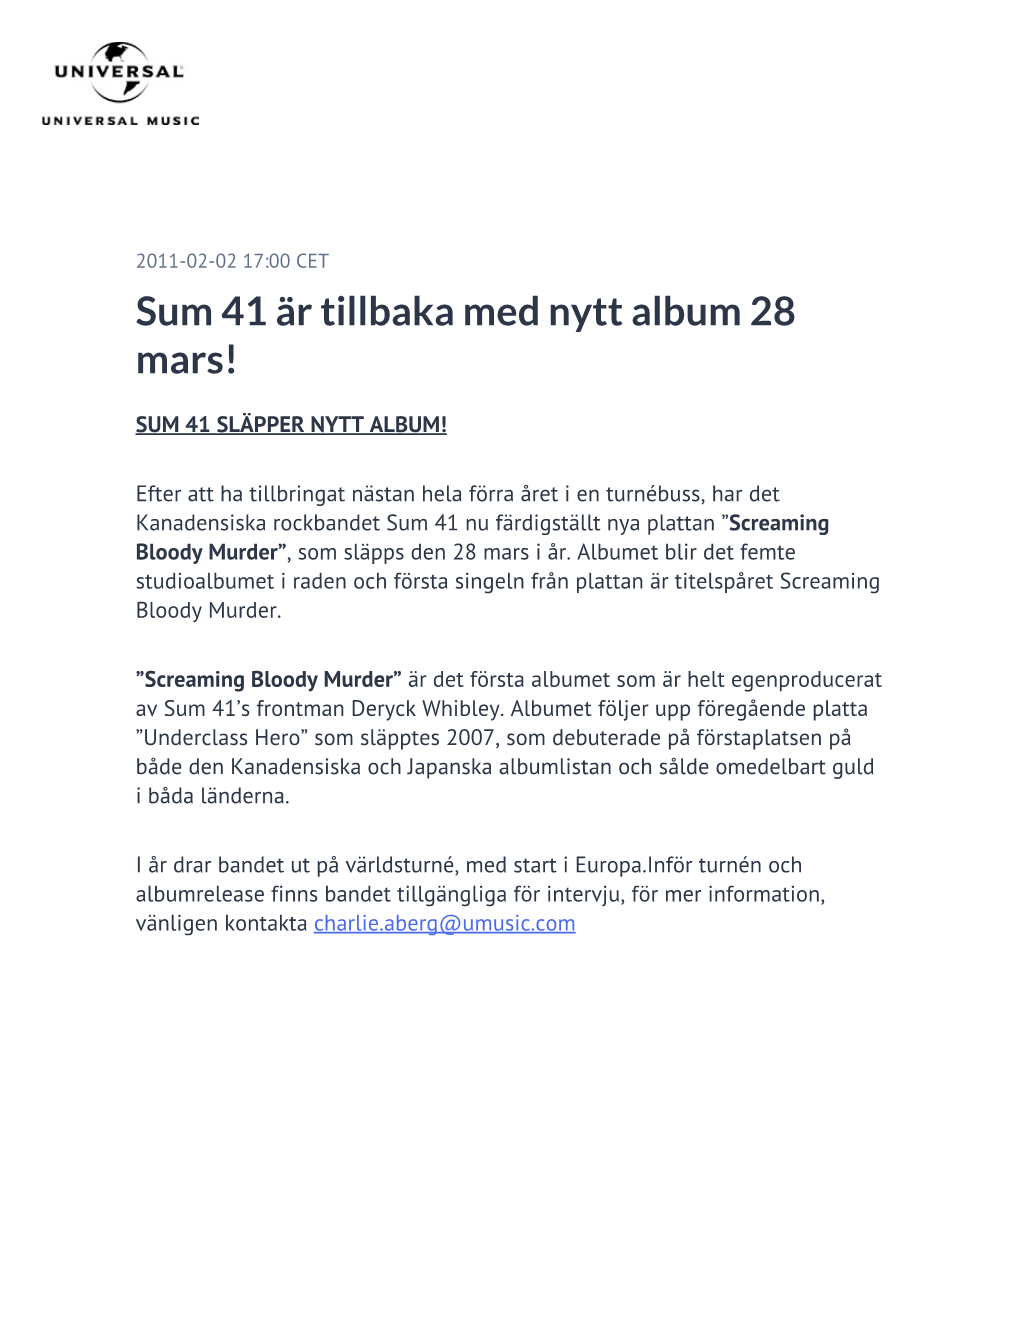 Sum 41 Är Tillbaka Med Nytt Album 28 Mars!